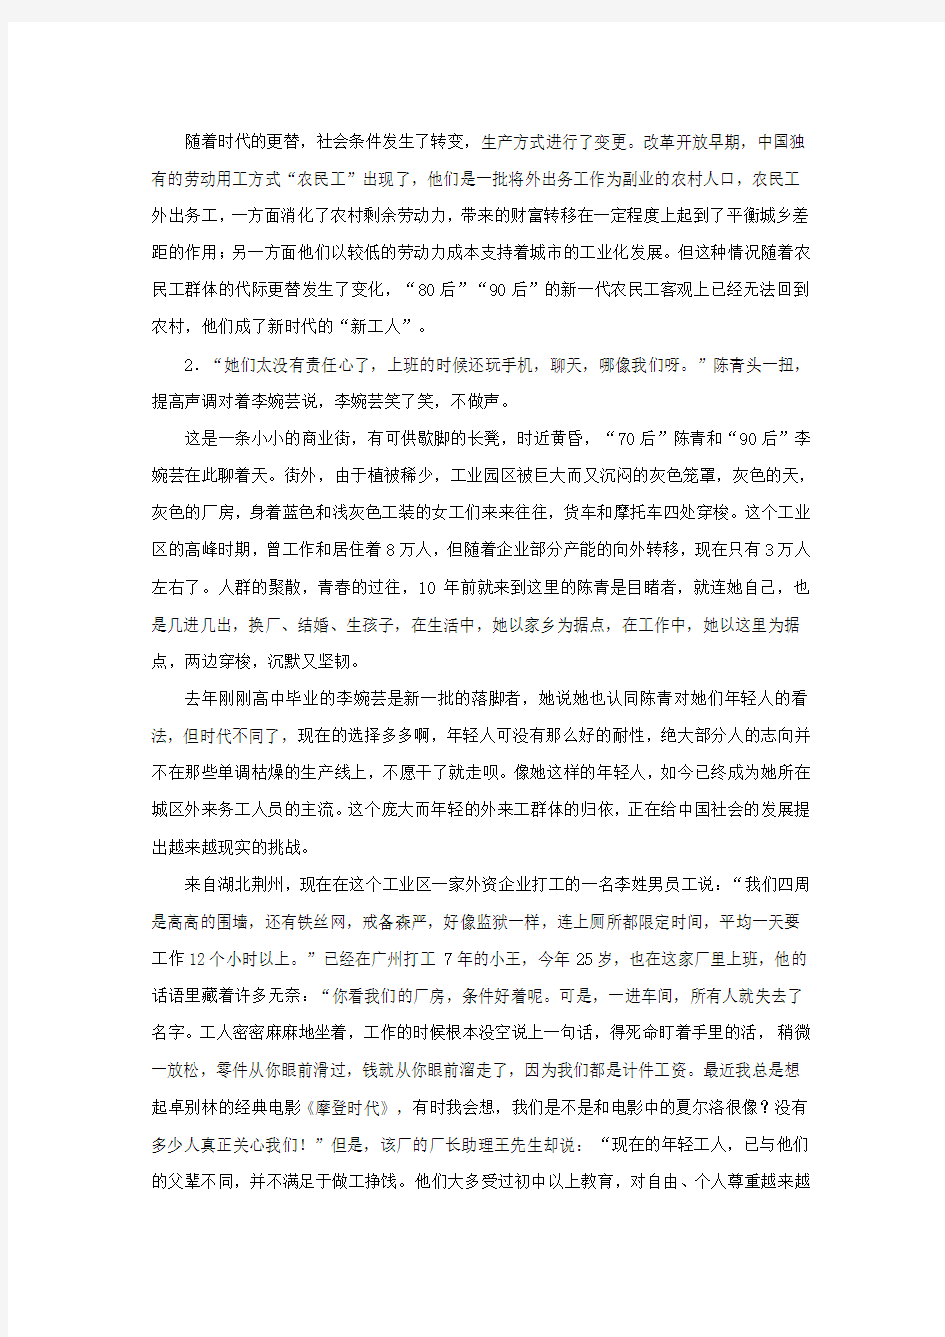 2013年国考申论真题(地市级)及张小龙名师解析